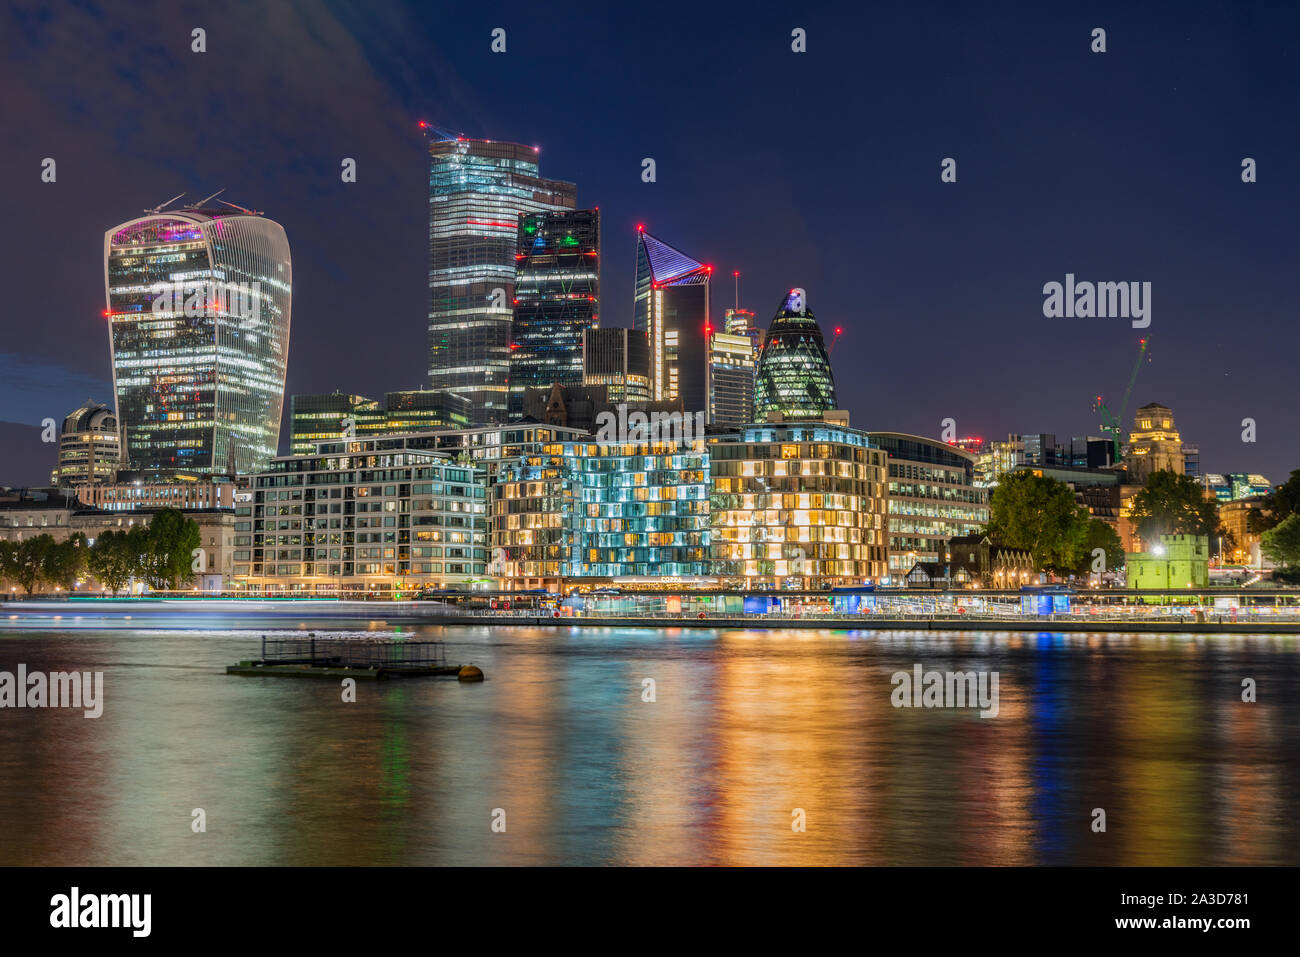 Ciudad de Londres de noche, visto desde la orilla sur del río Támesis Foto de stock